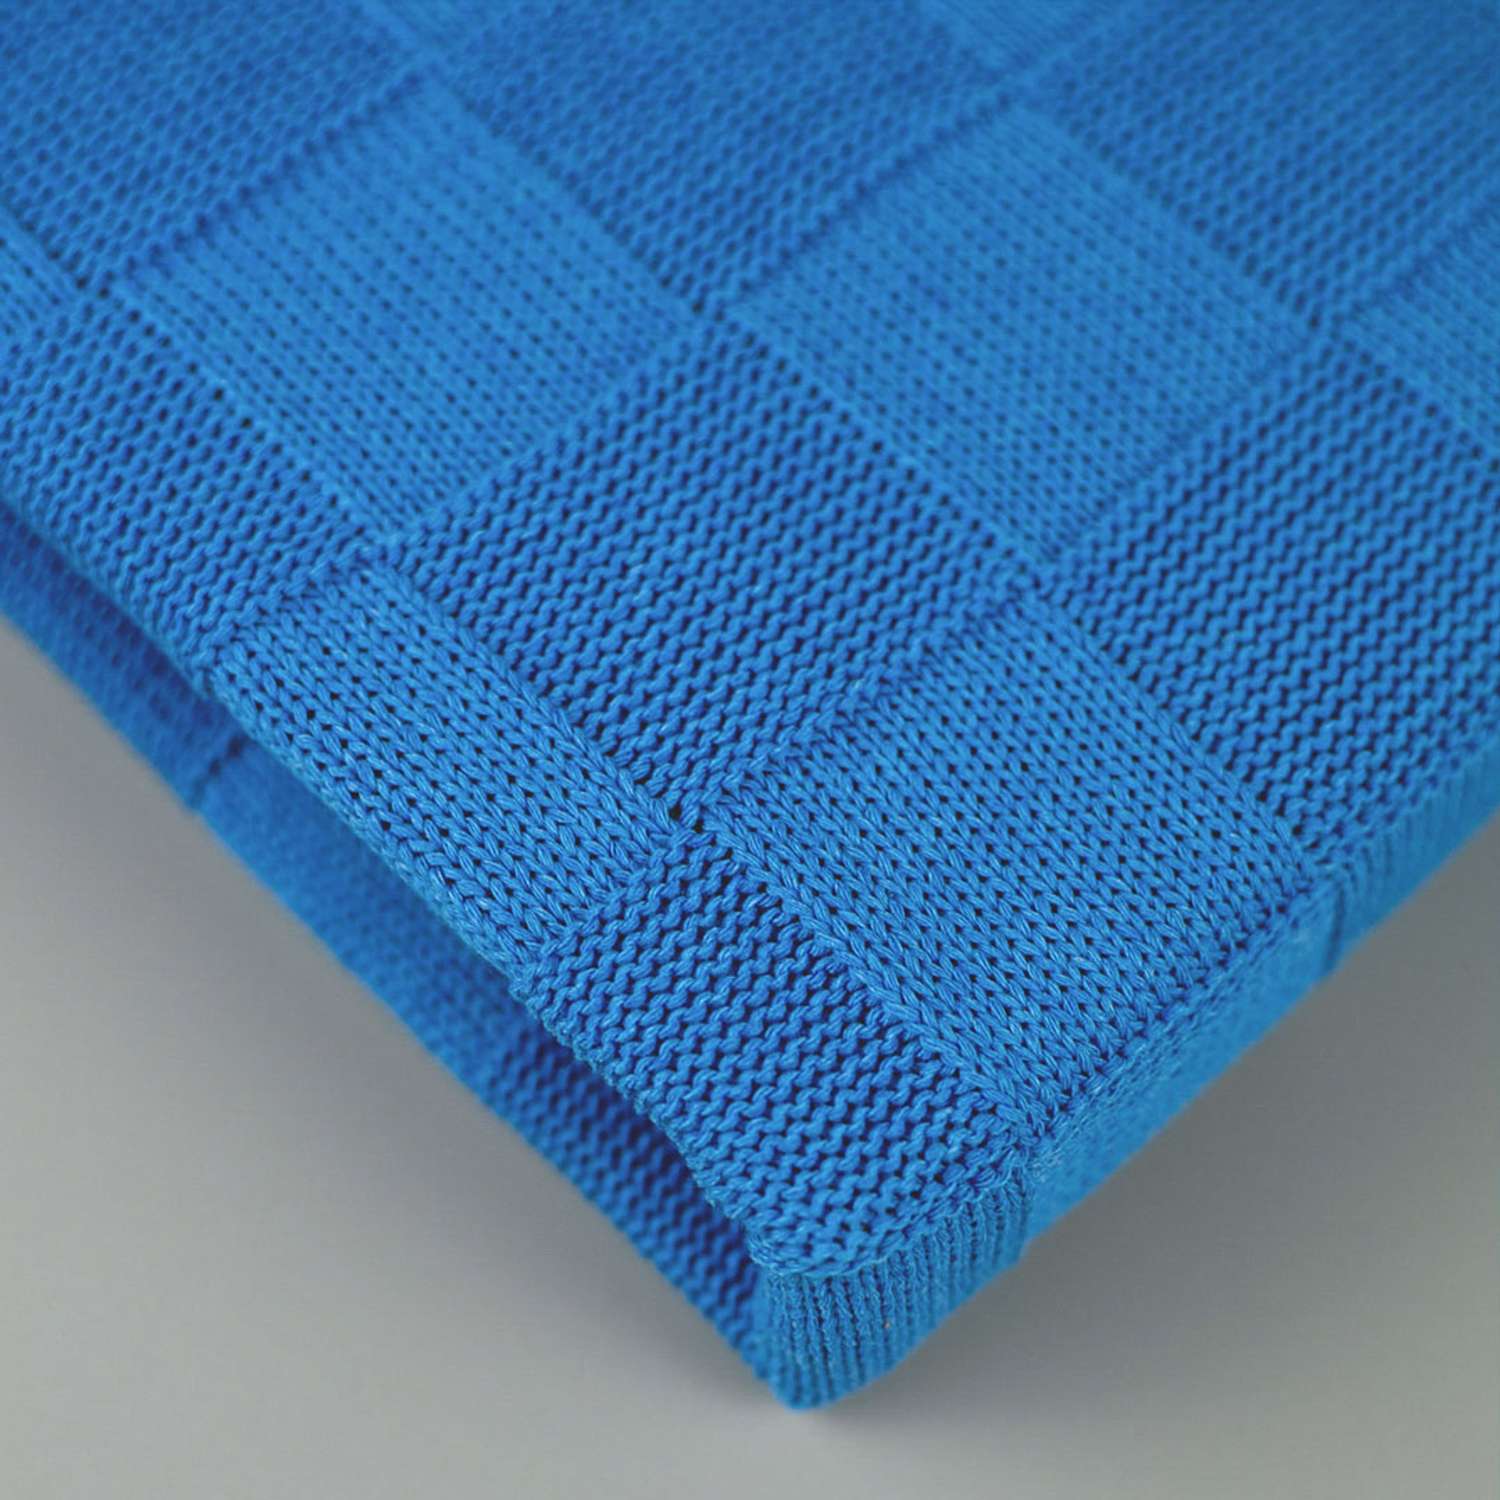 Плед-покрывало детский вязаный WARM WHIFF D-08 голубой конверт на выписку одеяло в коляску в кроватку на лето 90x110 - фото 2